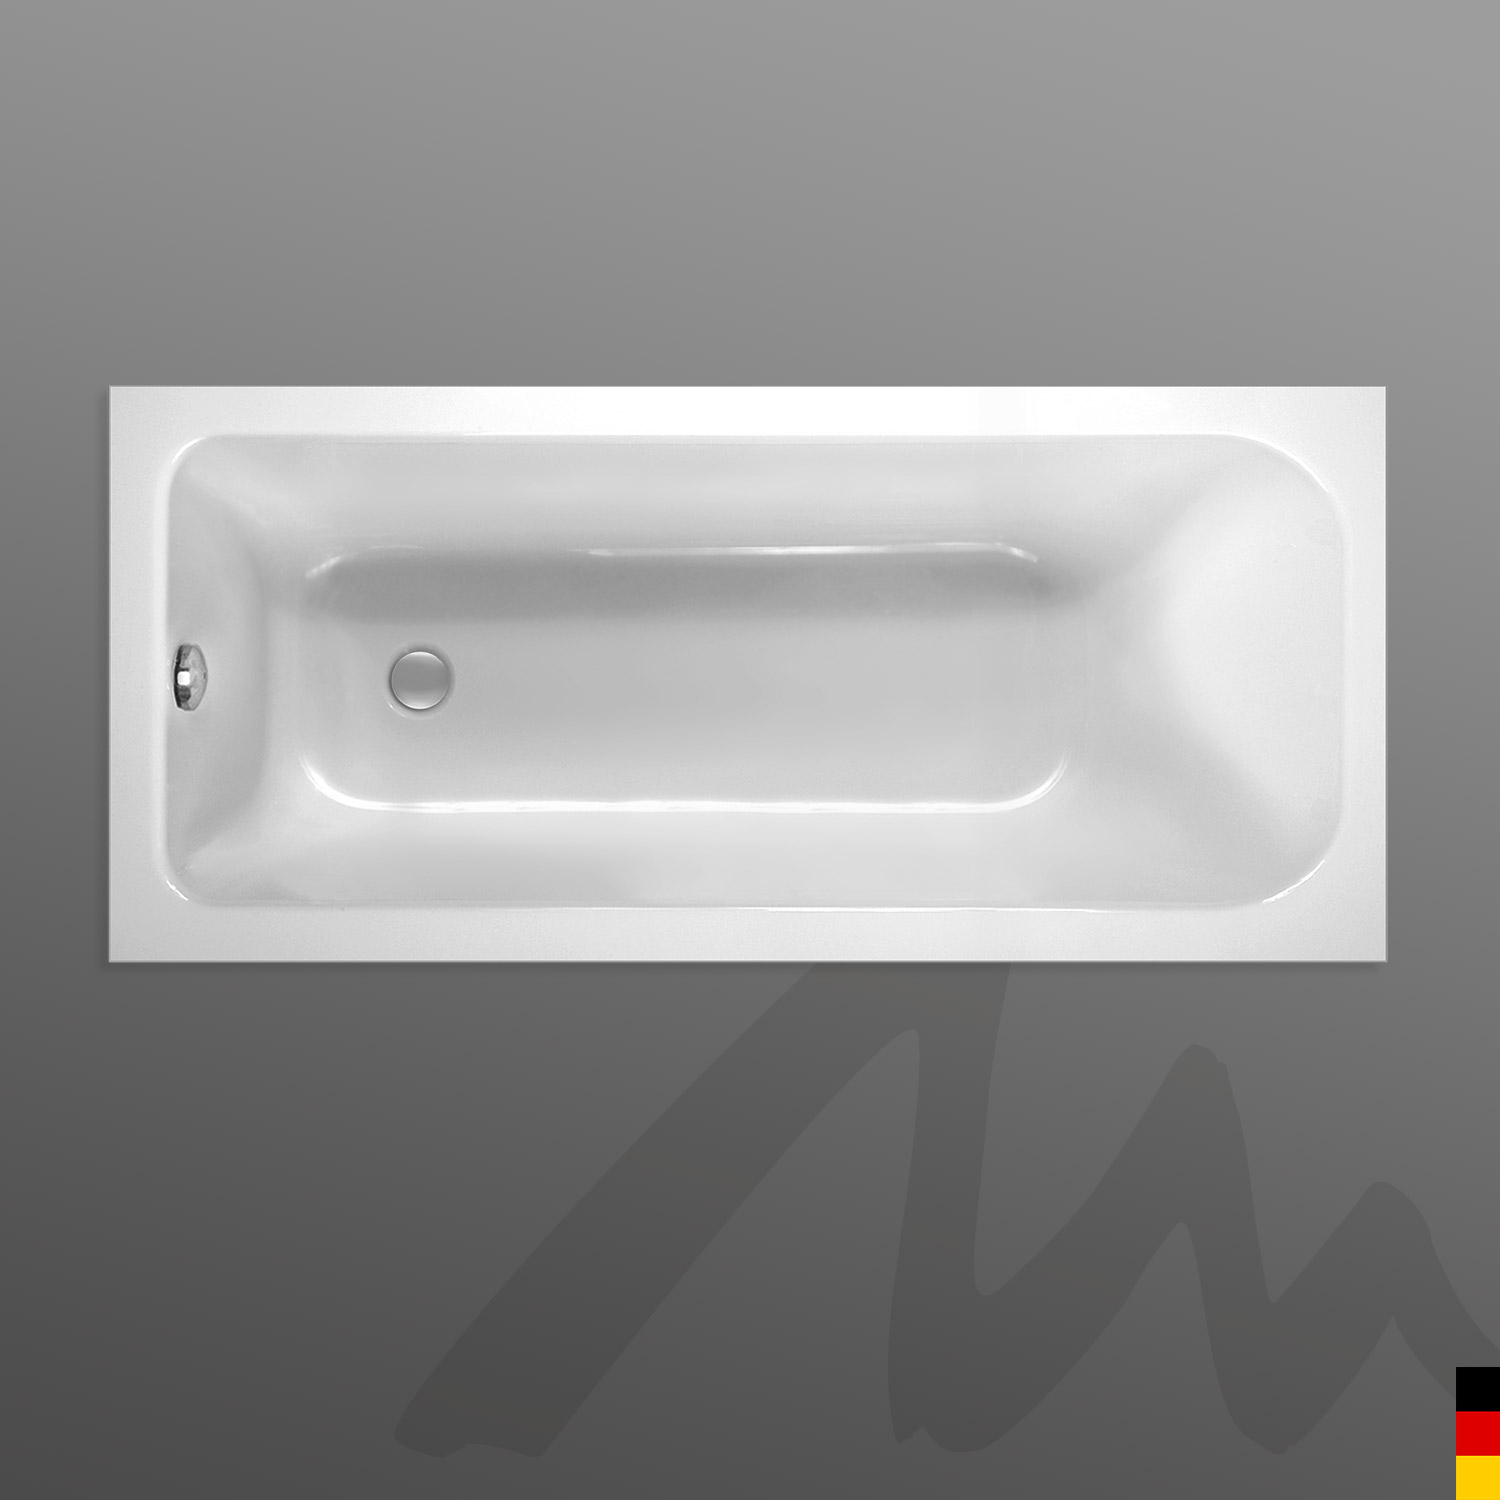 Mauersberger Badewanne Rechteck Caudex 180/80  180x80x50  Farbe:weiß